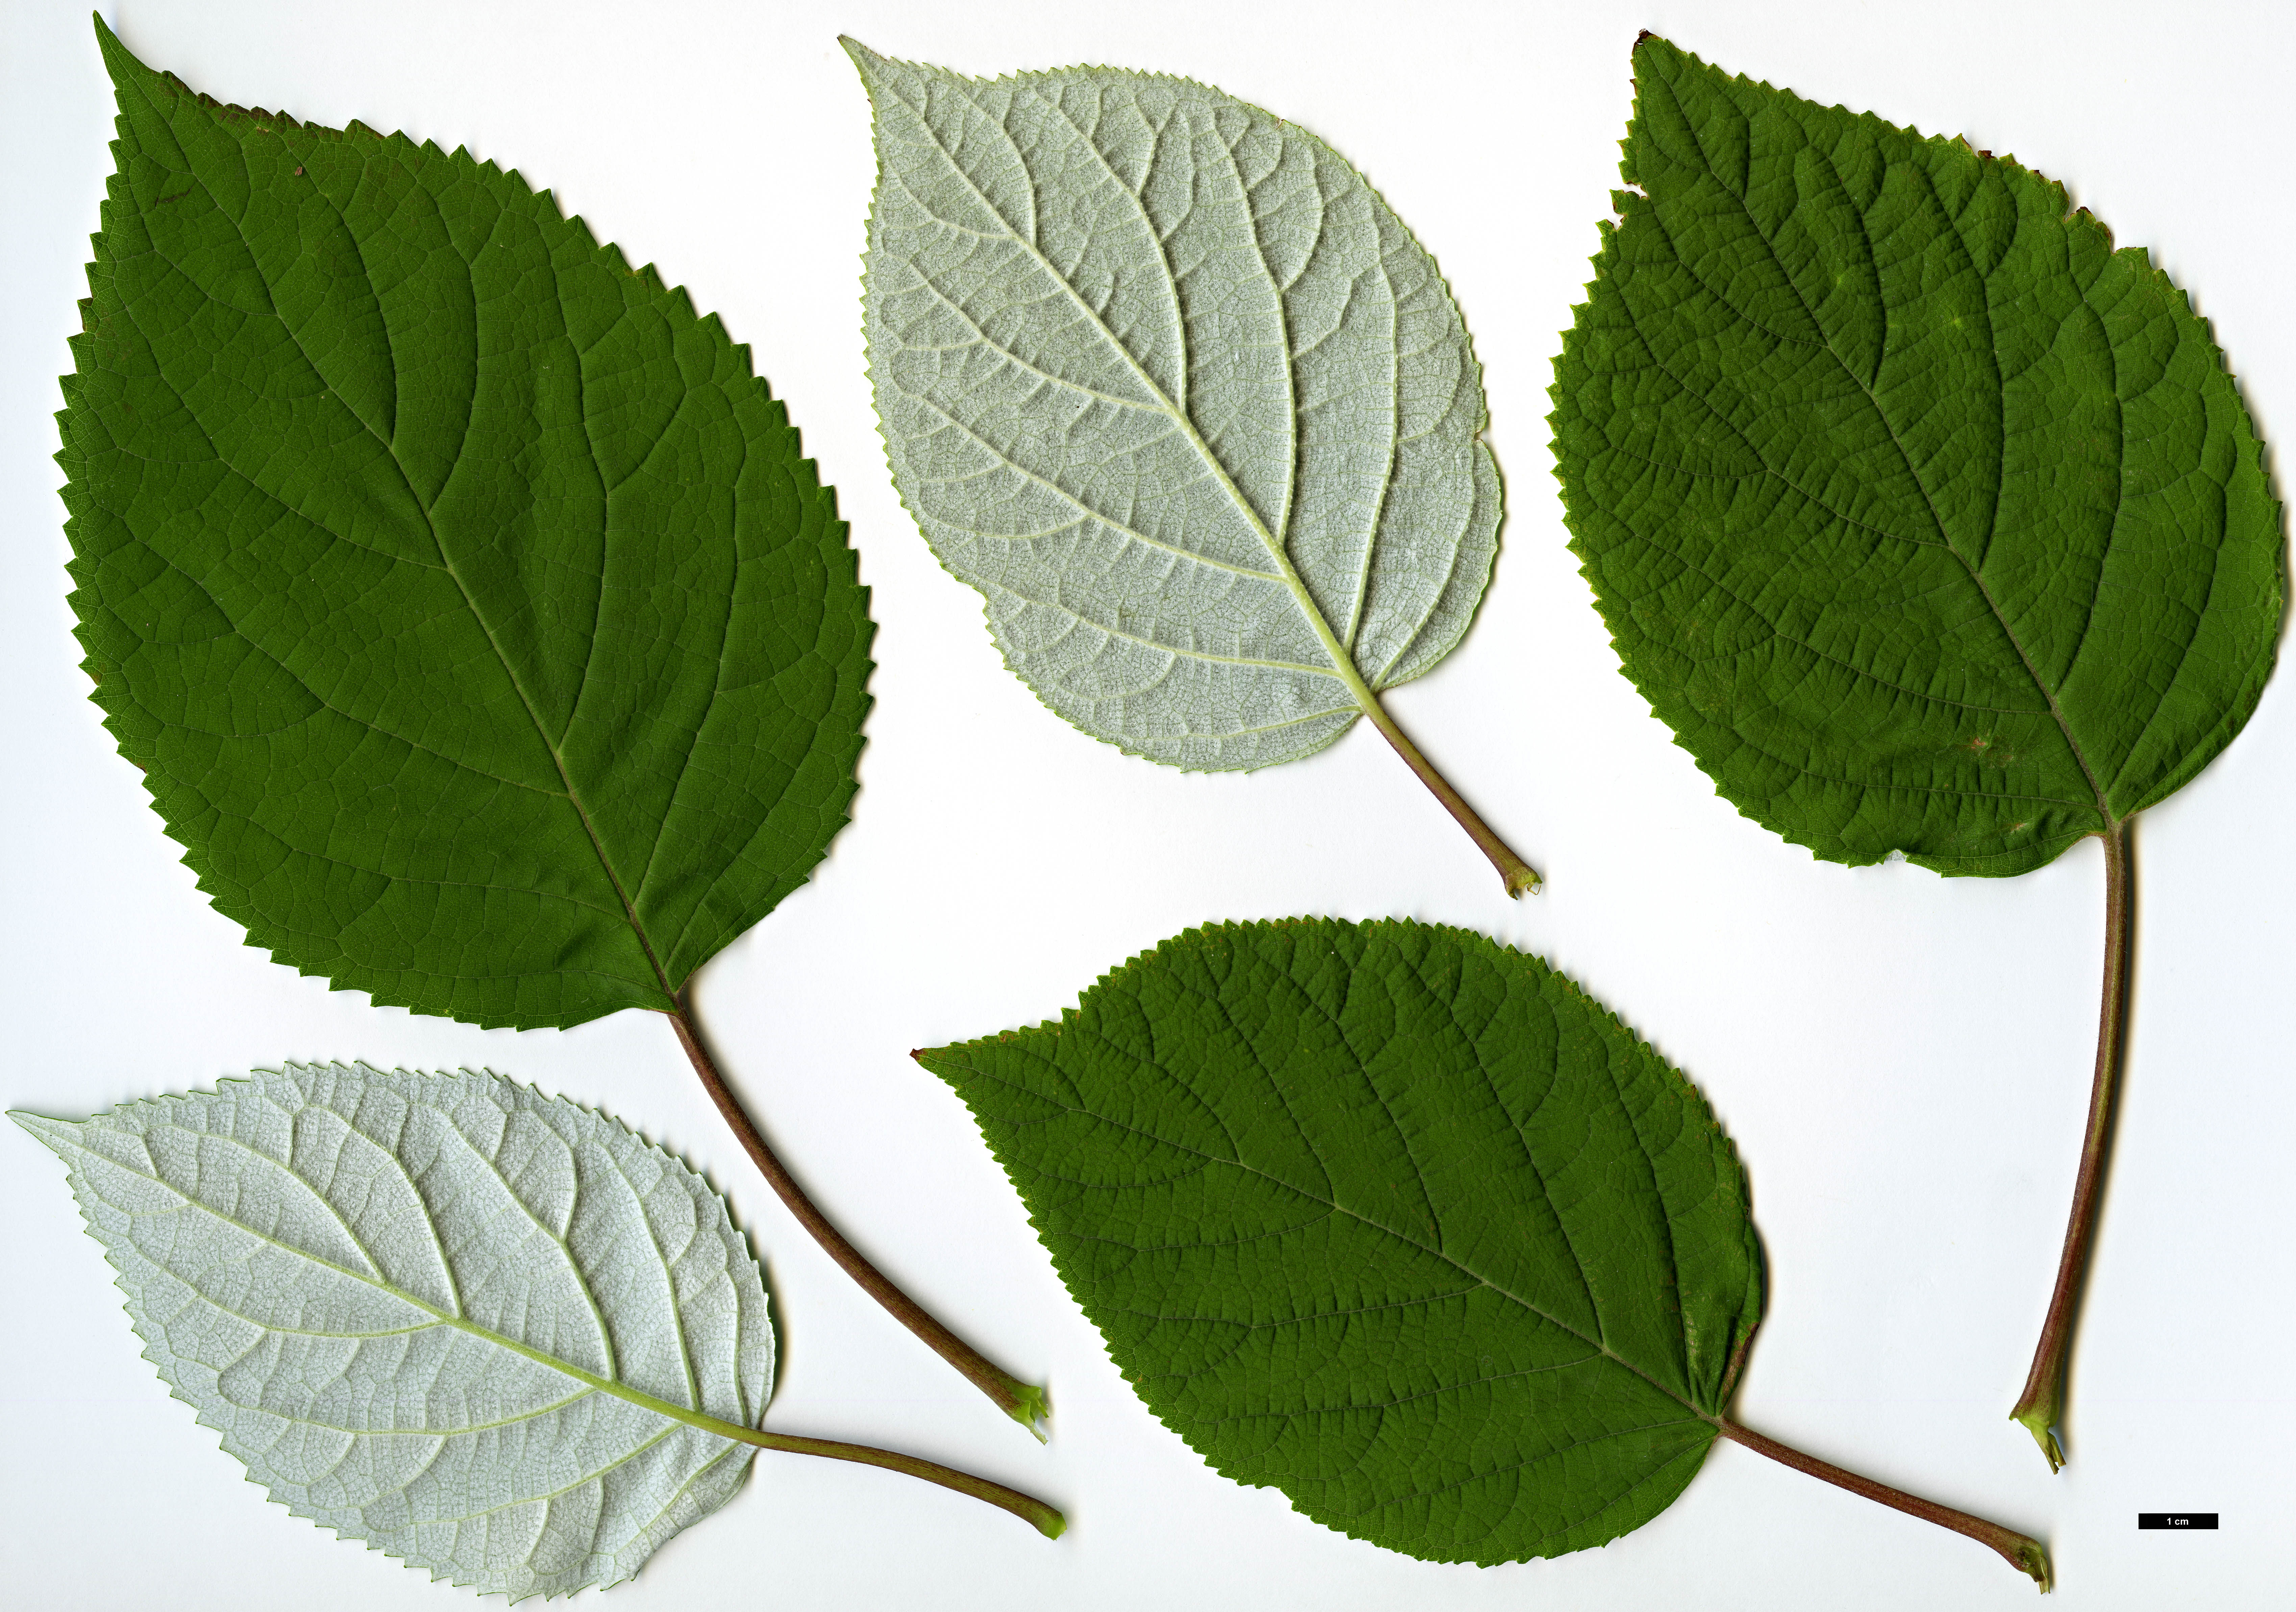 High resolution image: Family: Hydrangeaceae - Genus: Hydrangea - Taxon: arborescens - SpeciesSub: subsp. radiata